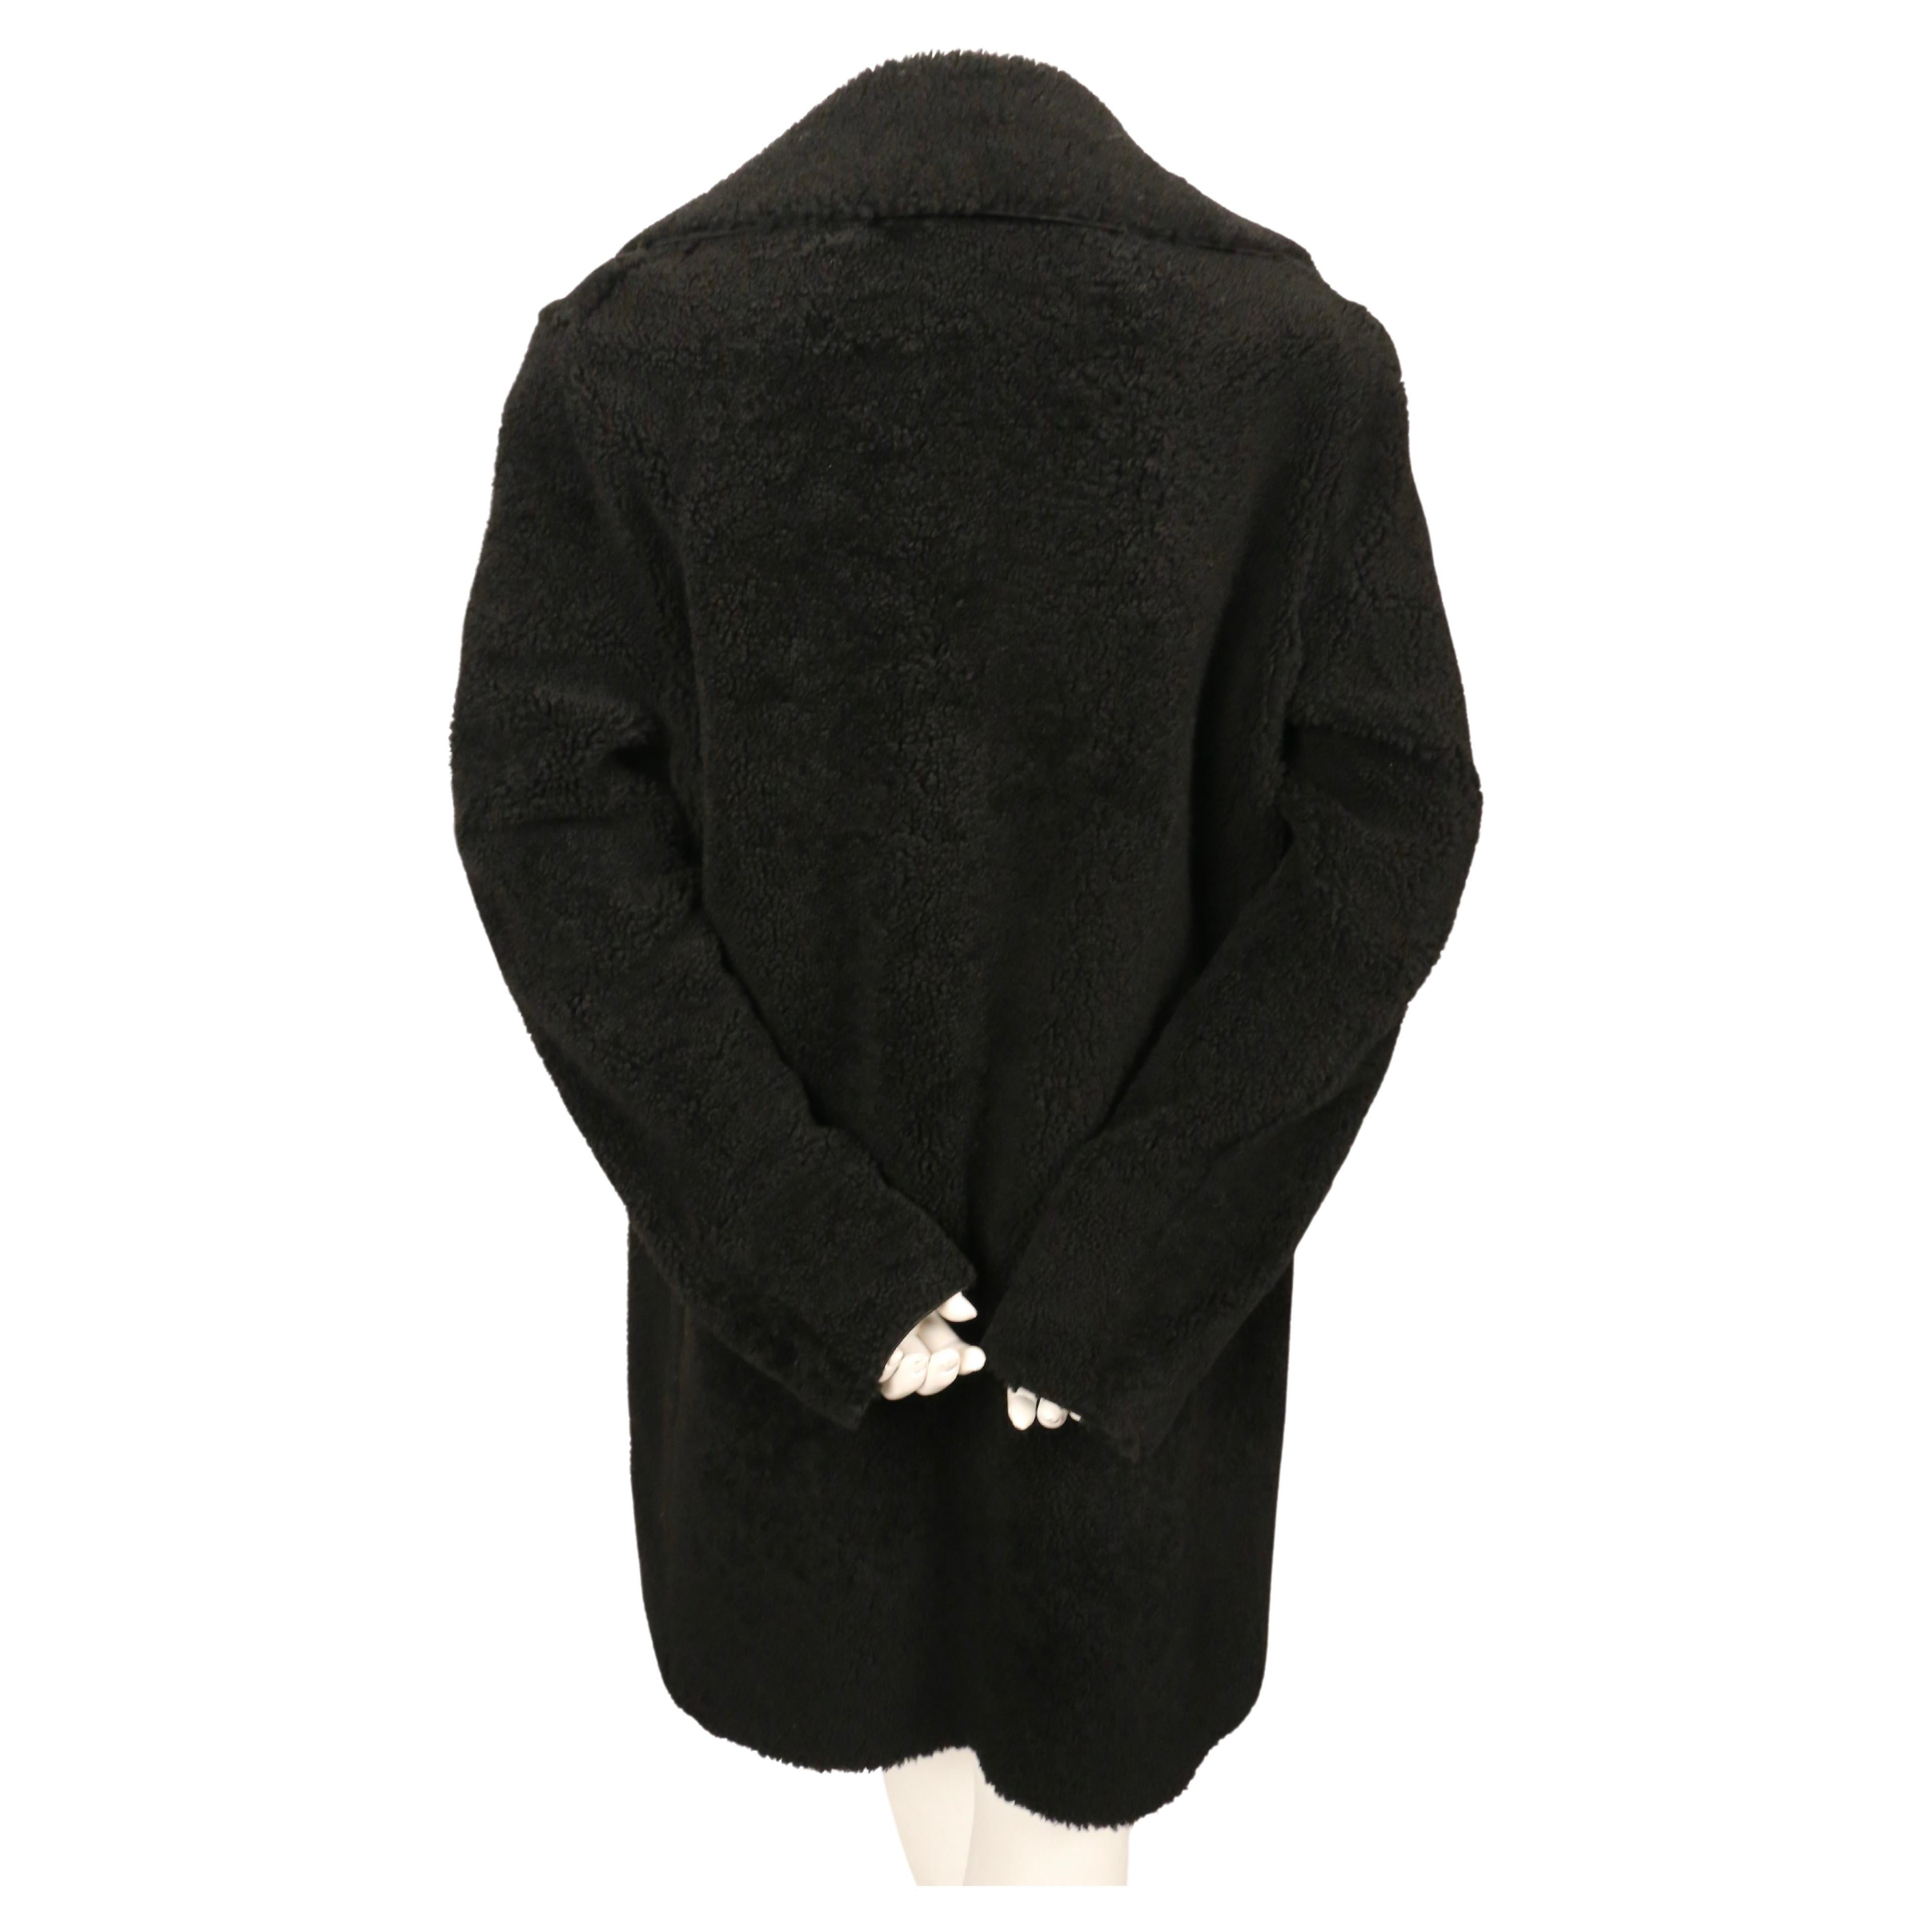 Manteau en shearling noir de jais à fermeture ouverte conçu par Phoebe Philo pour Celine. Taille française 40. Mesures approximatives : épaule 18